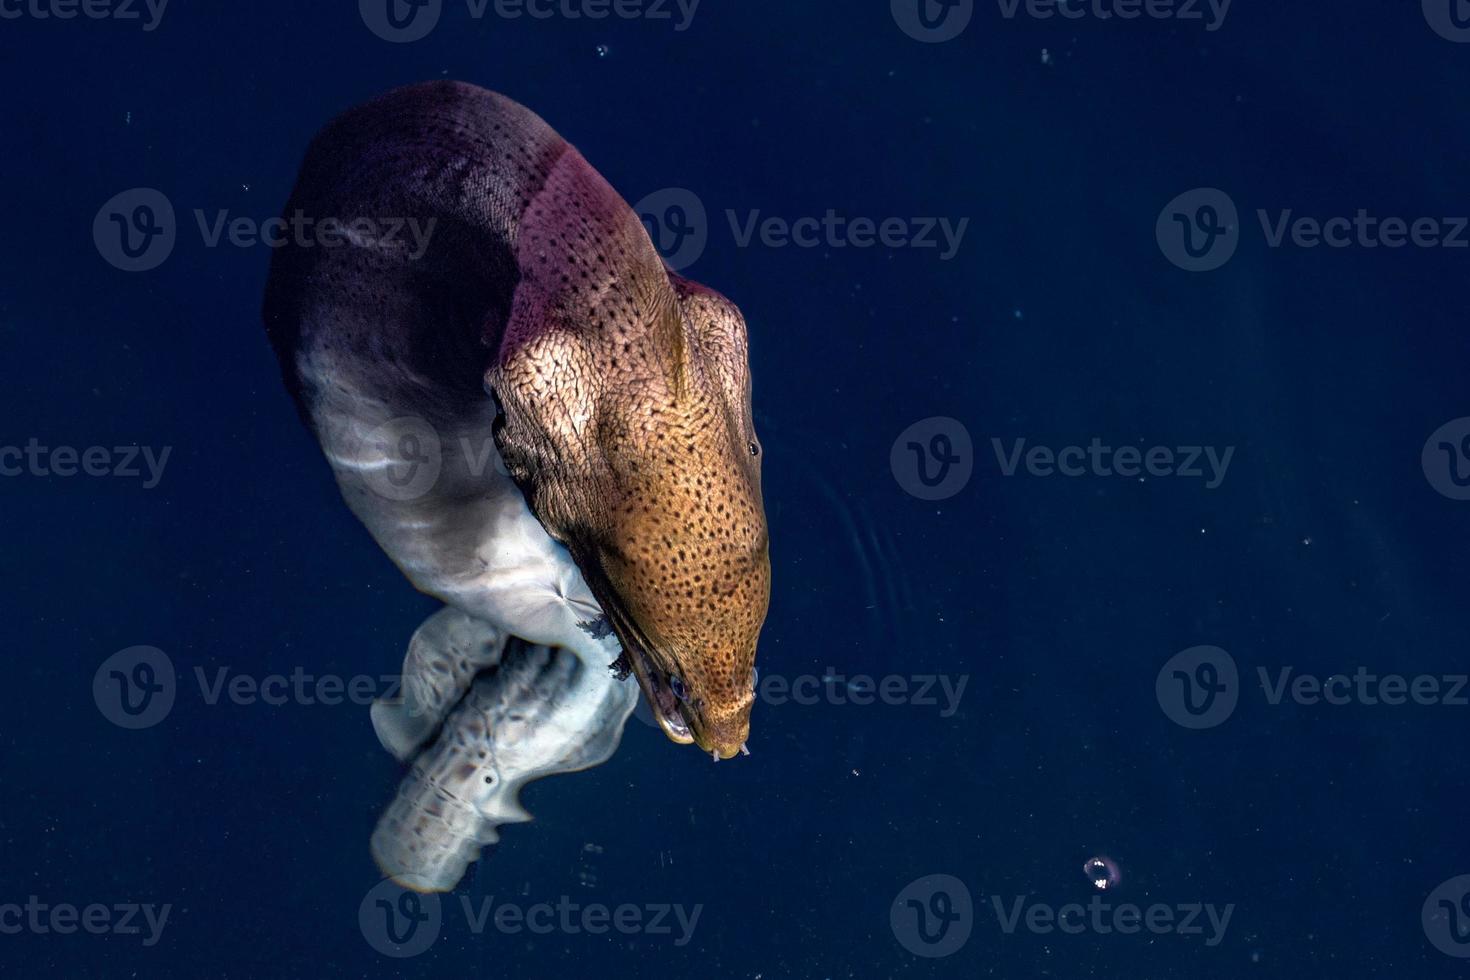 aalmuräneporträt auf den malediven foto